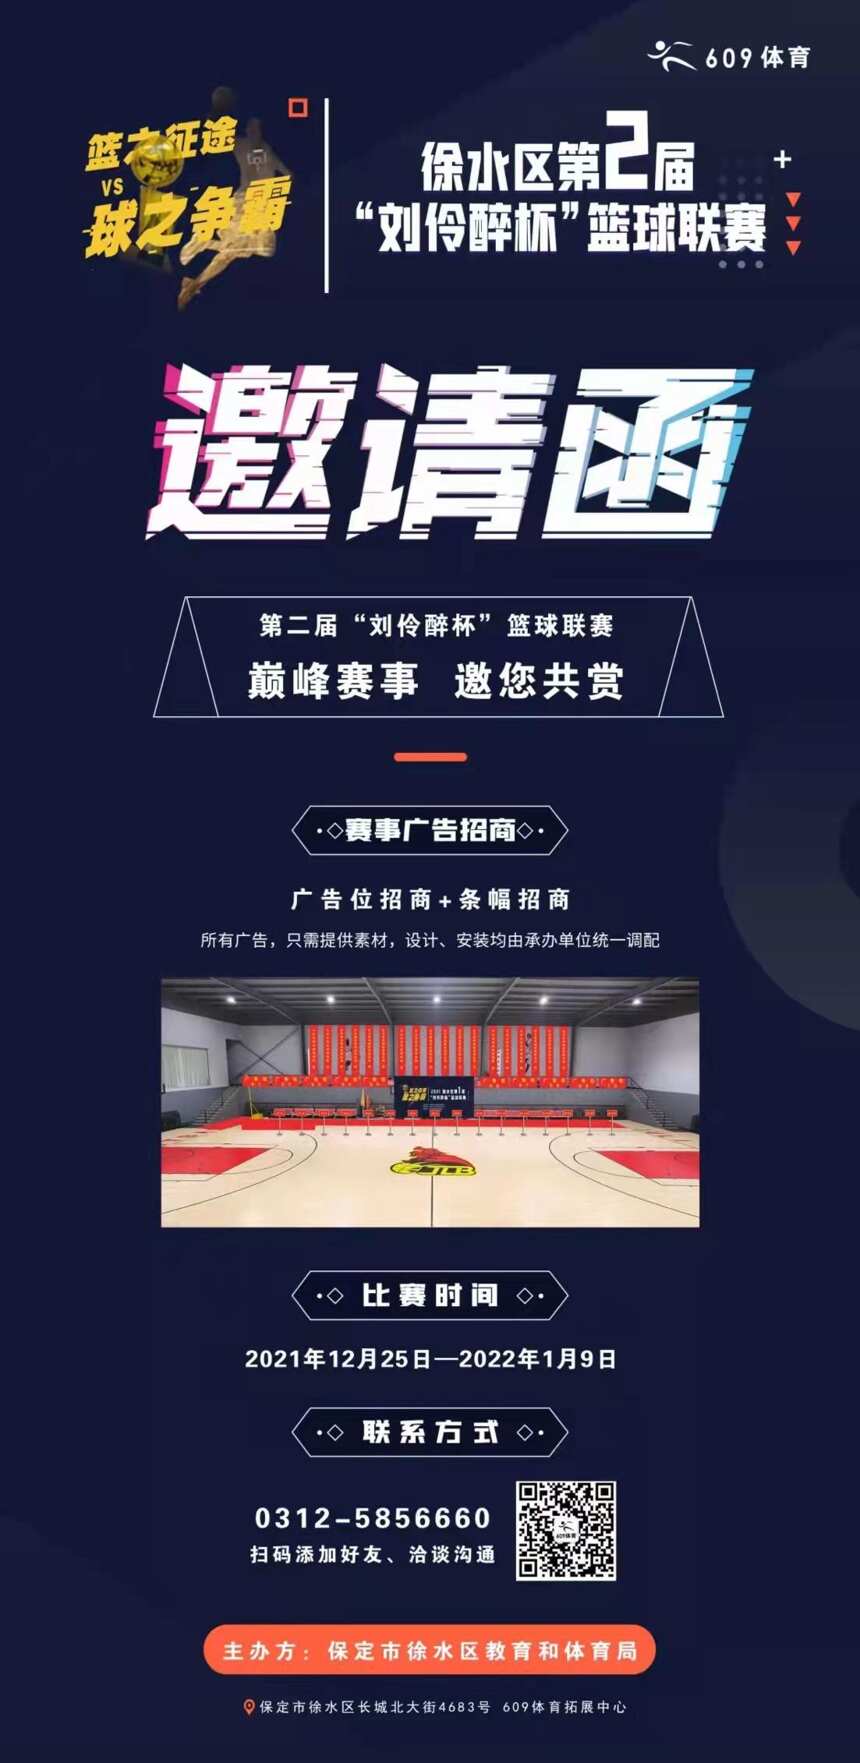 徐水区第二届“刘伶醉杯”篮球联赛战火重燃征集24支篮球队